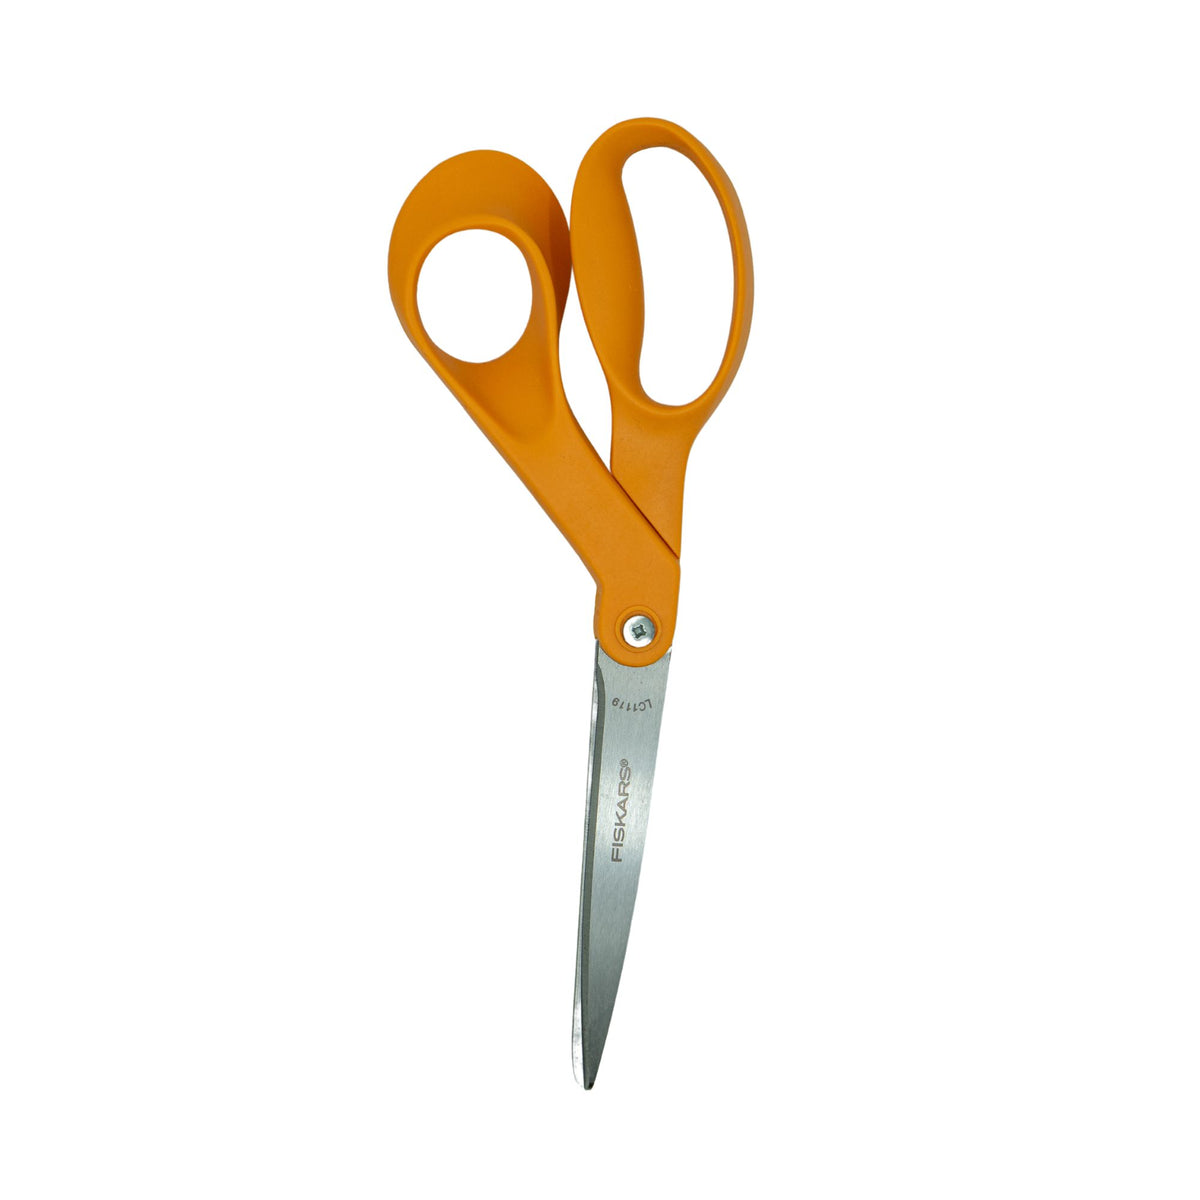 Fiskars Classic Stainless Steel Scissors 8 in. Length Straight Orange